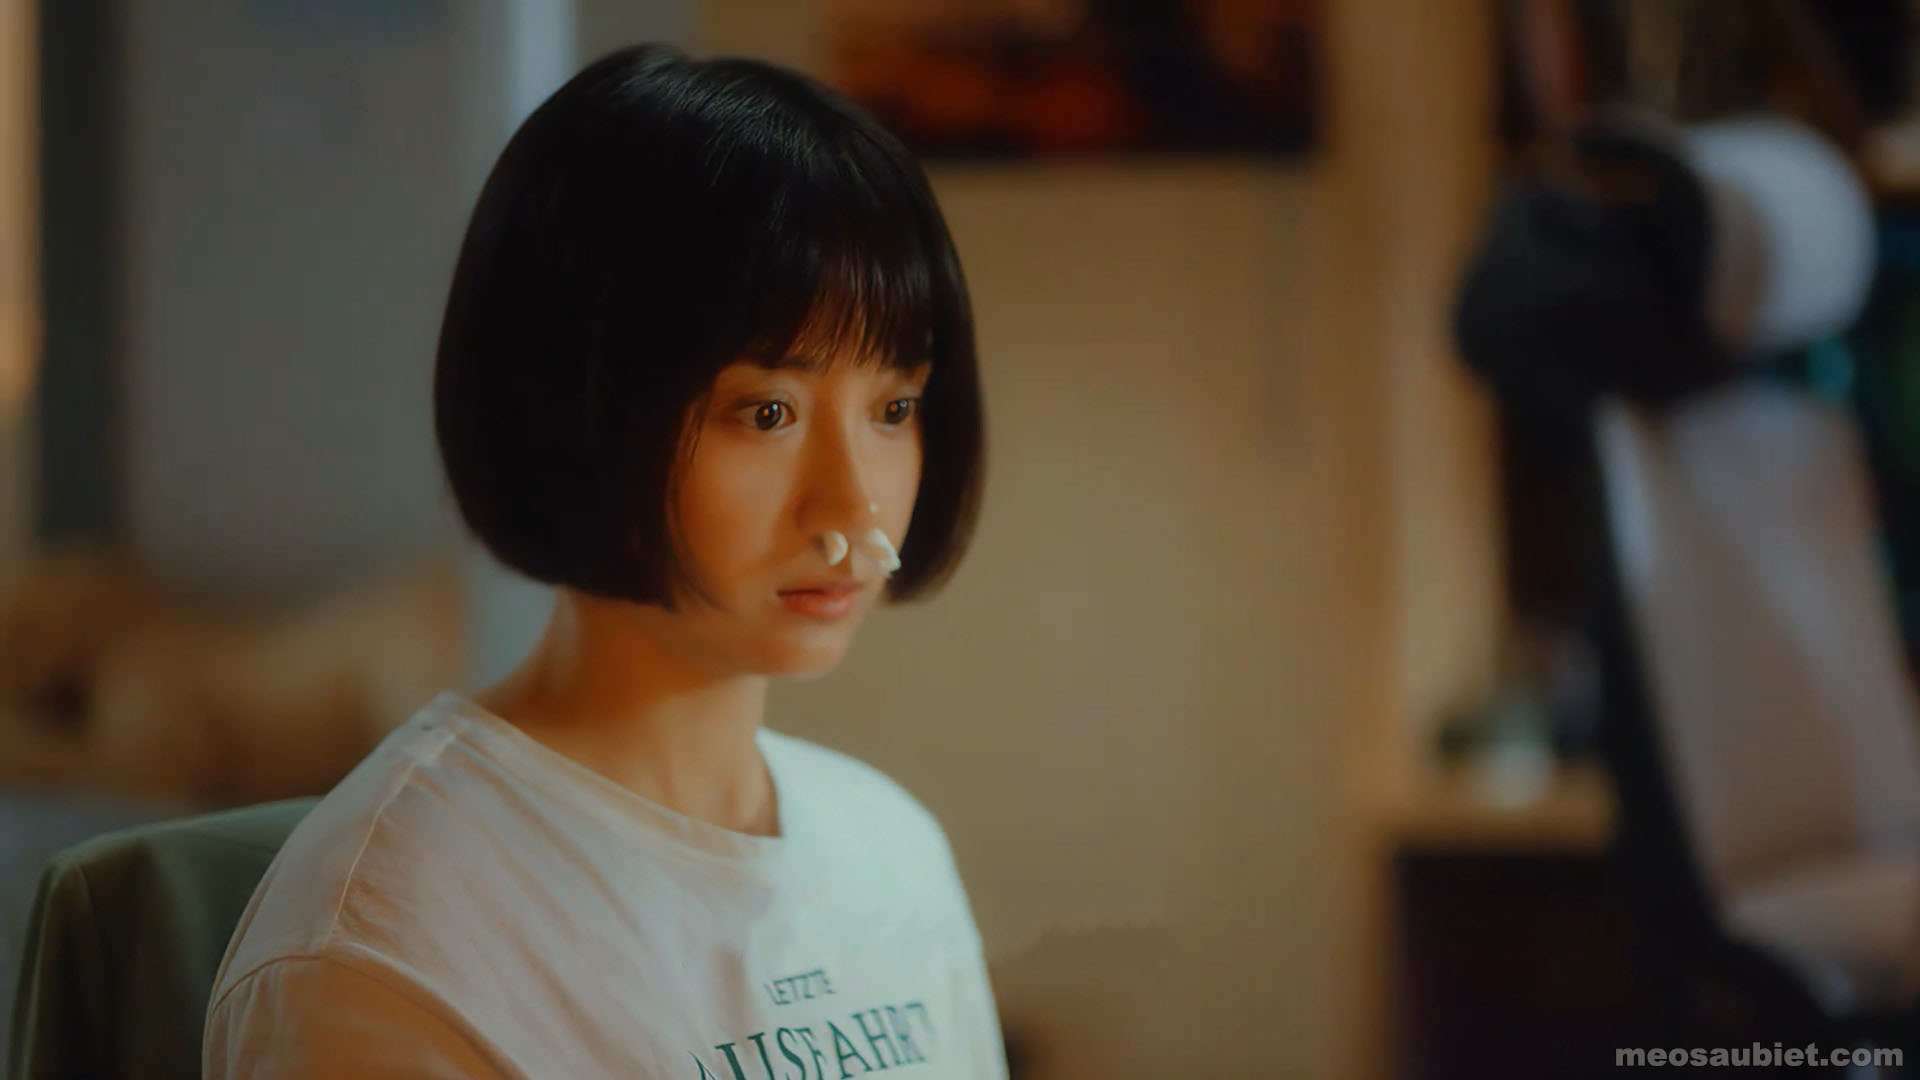 Tuổi hai mươi tuổi chững chạc 2020 Bốc Quan Kim trong vai Khương Tiểu Quả